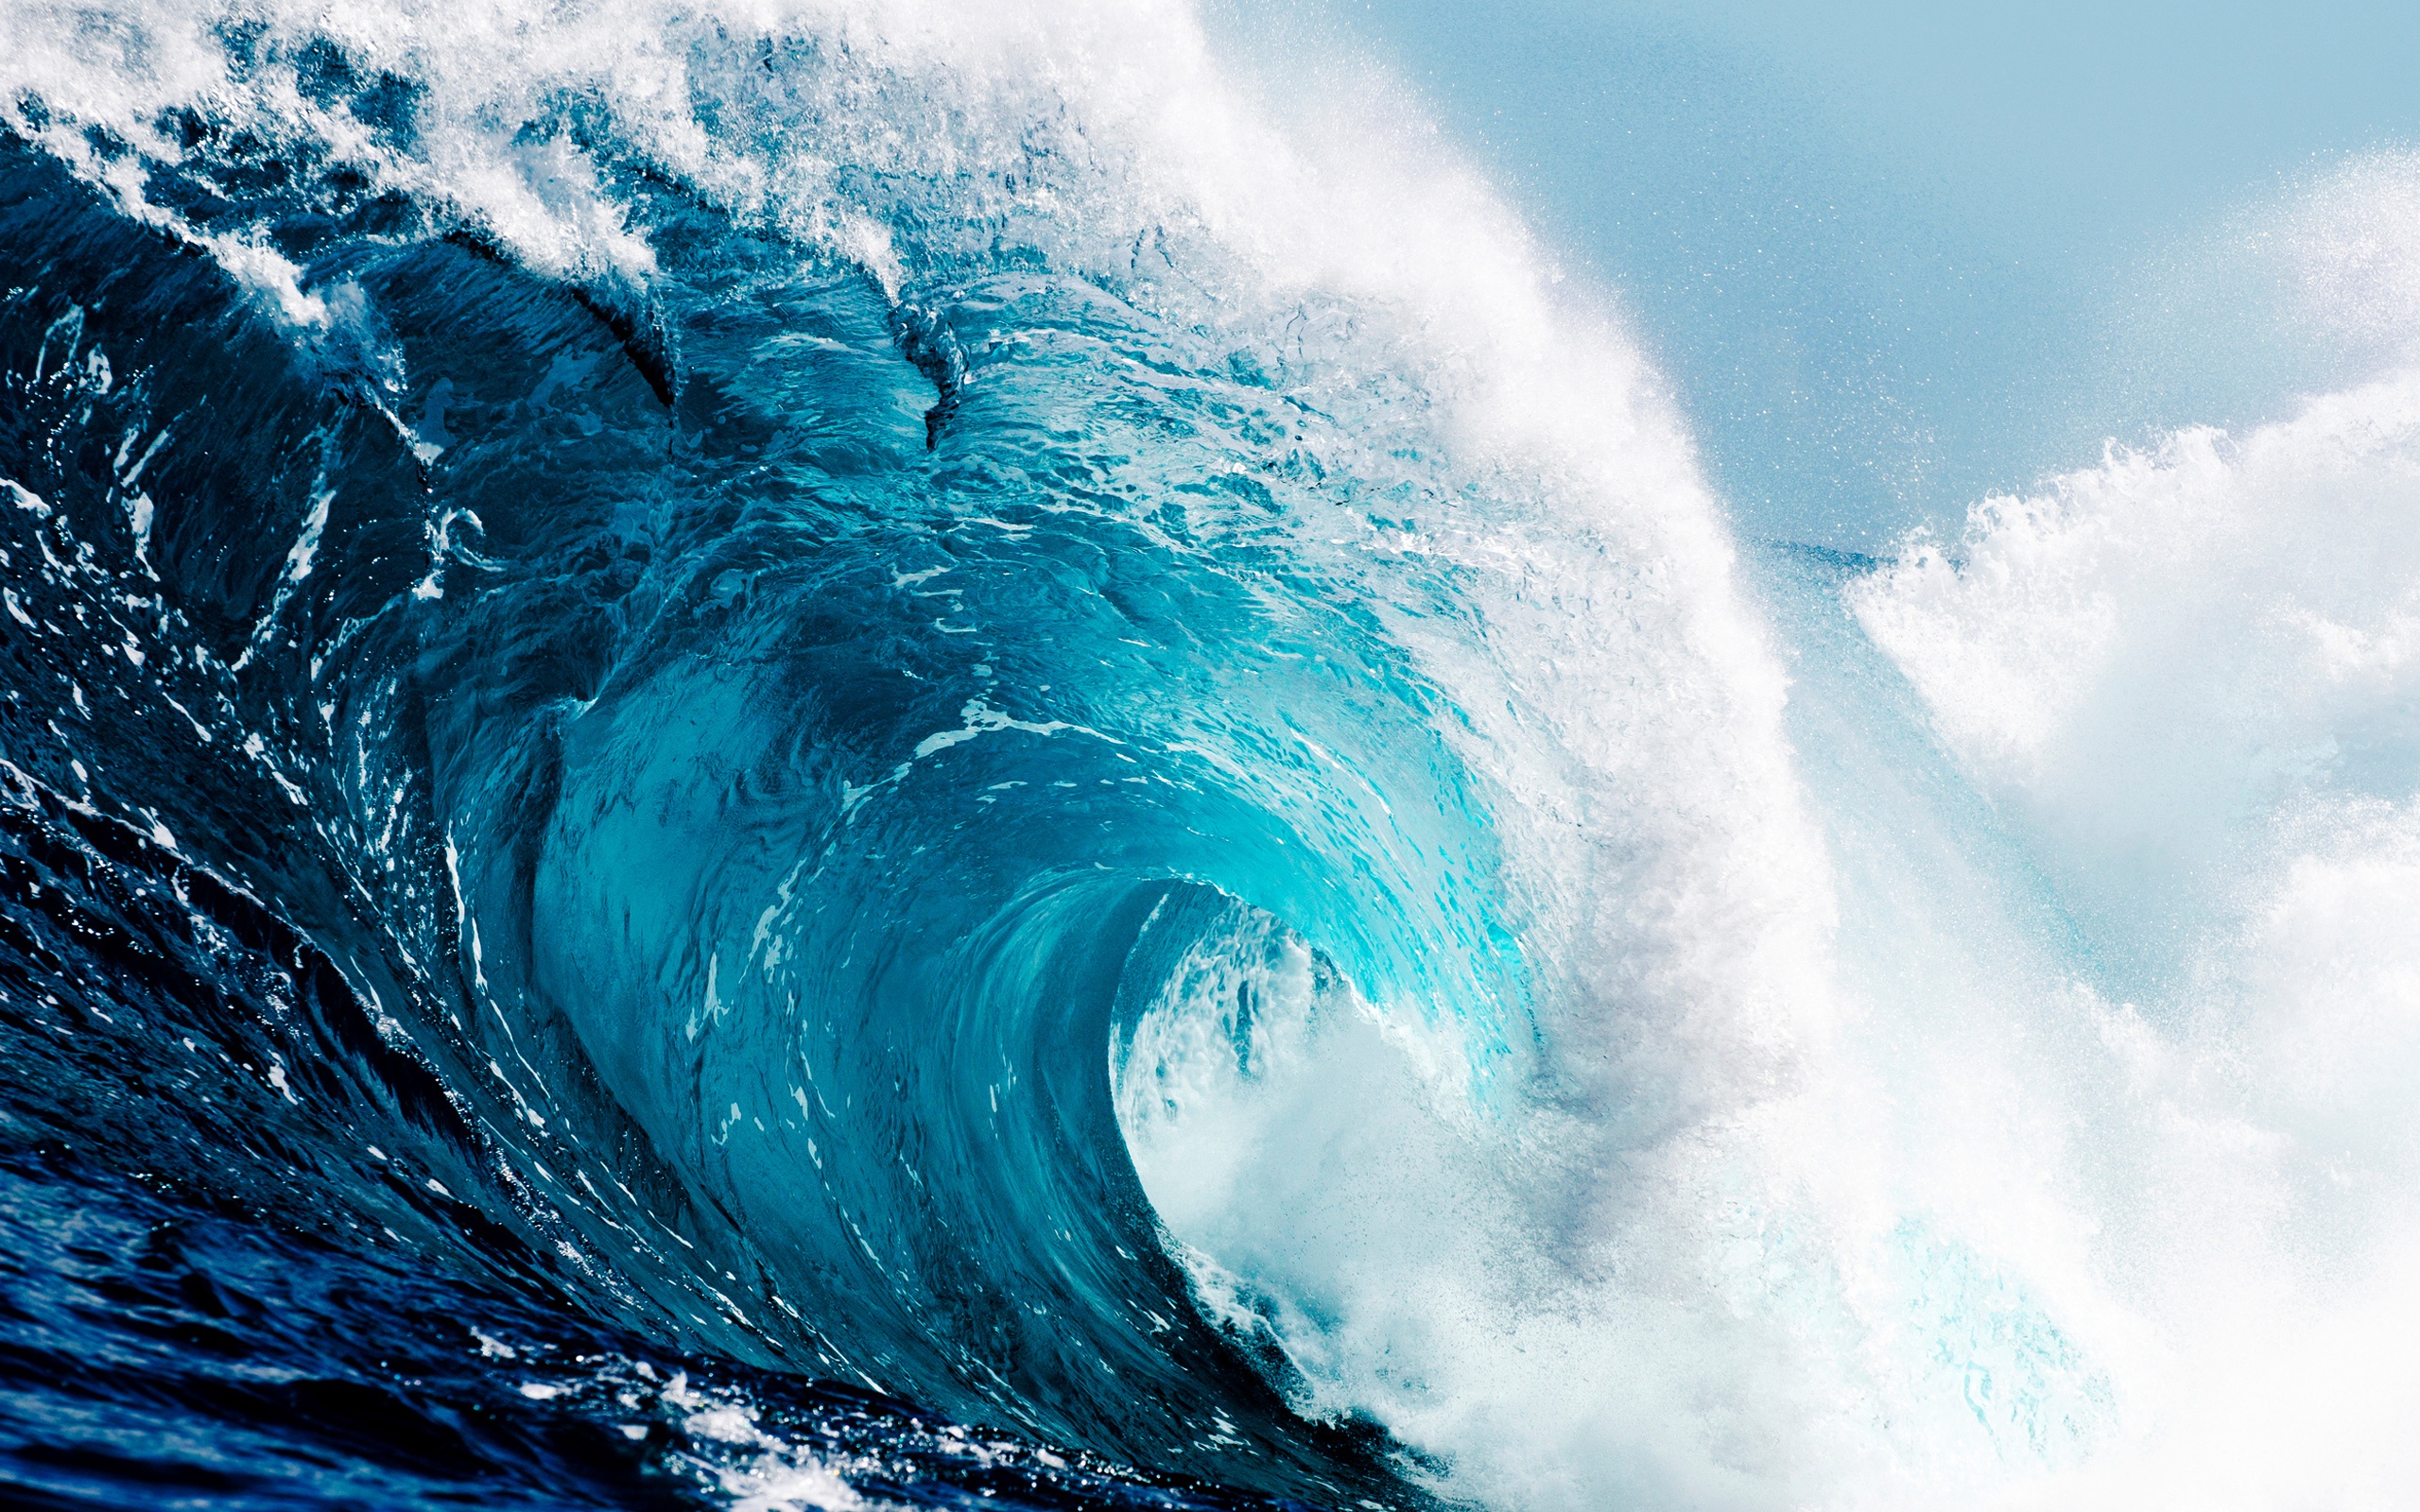 Sóng biển: Sóng biển như nhịp điệu của thiên nhiên, với âm thanh êm ái và những hình ảnh cực kỳ đẹp mắt. Hãy xem những bức ảnh về sóng biển để cảm nhận được sự trong sáng và sức sống từ biển cả. 